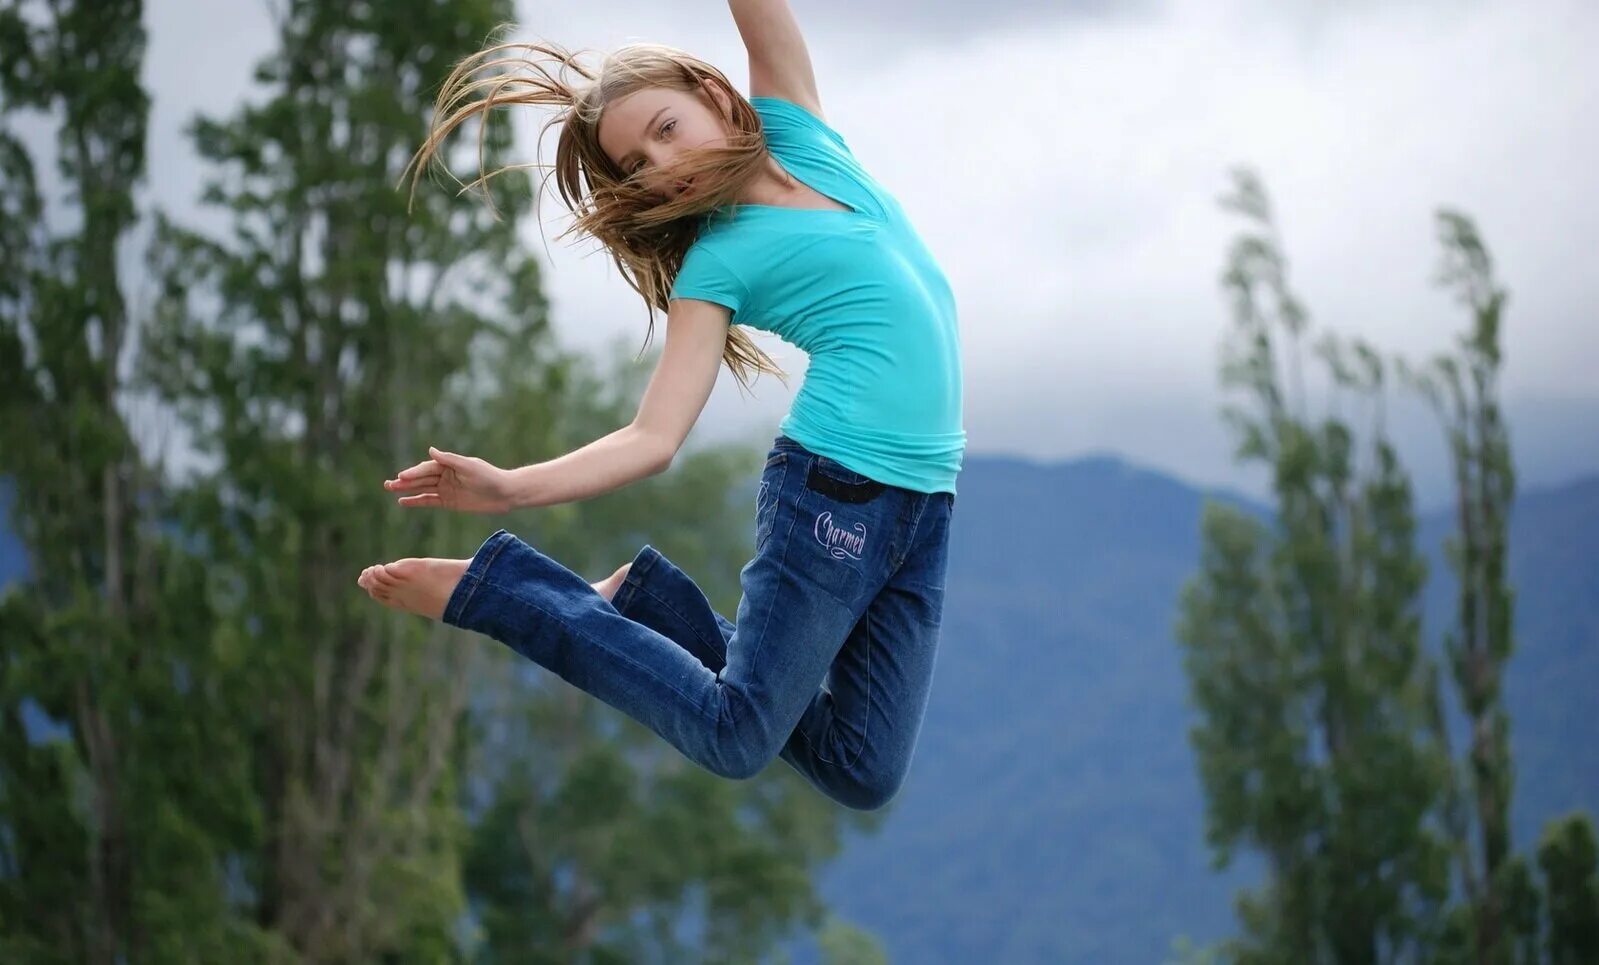 Фотки. Девушка в прыжке. Девушка прыгает. Девушка прыгает в воздухе. Фотосессия в воздухе.